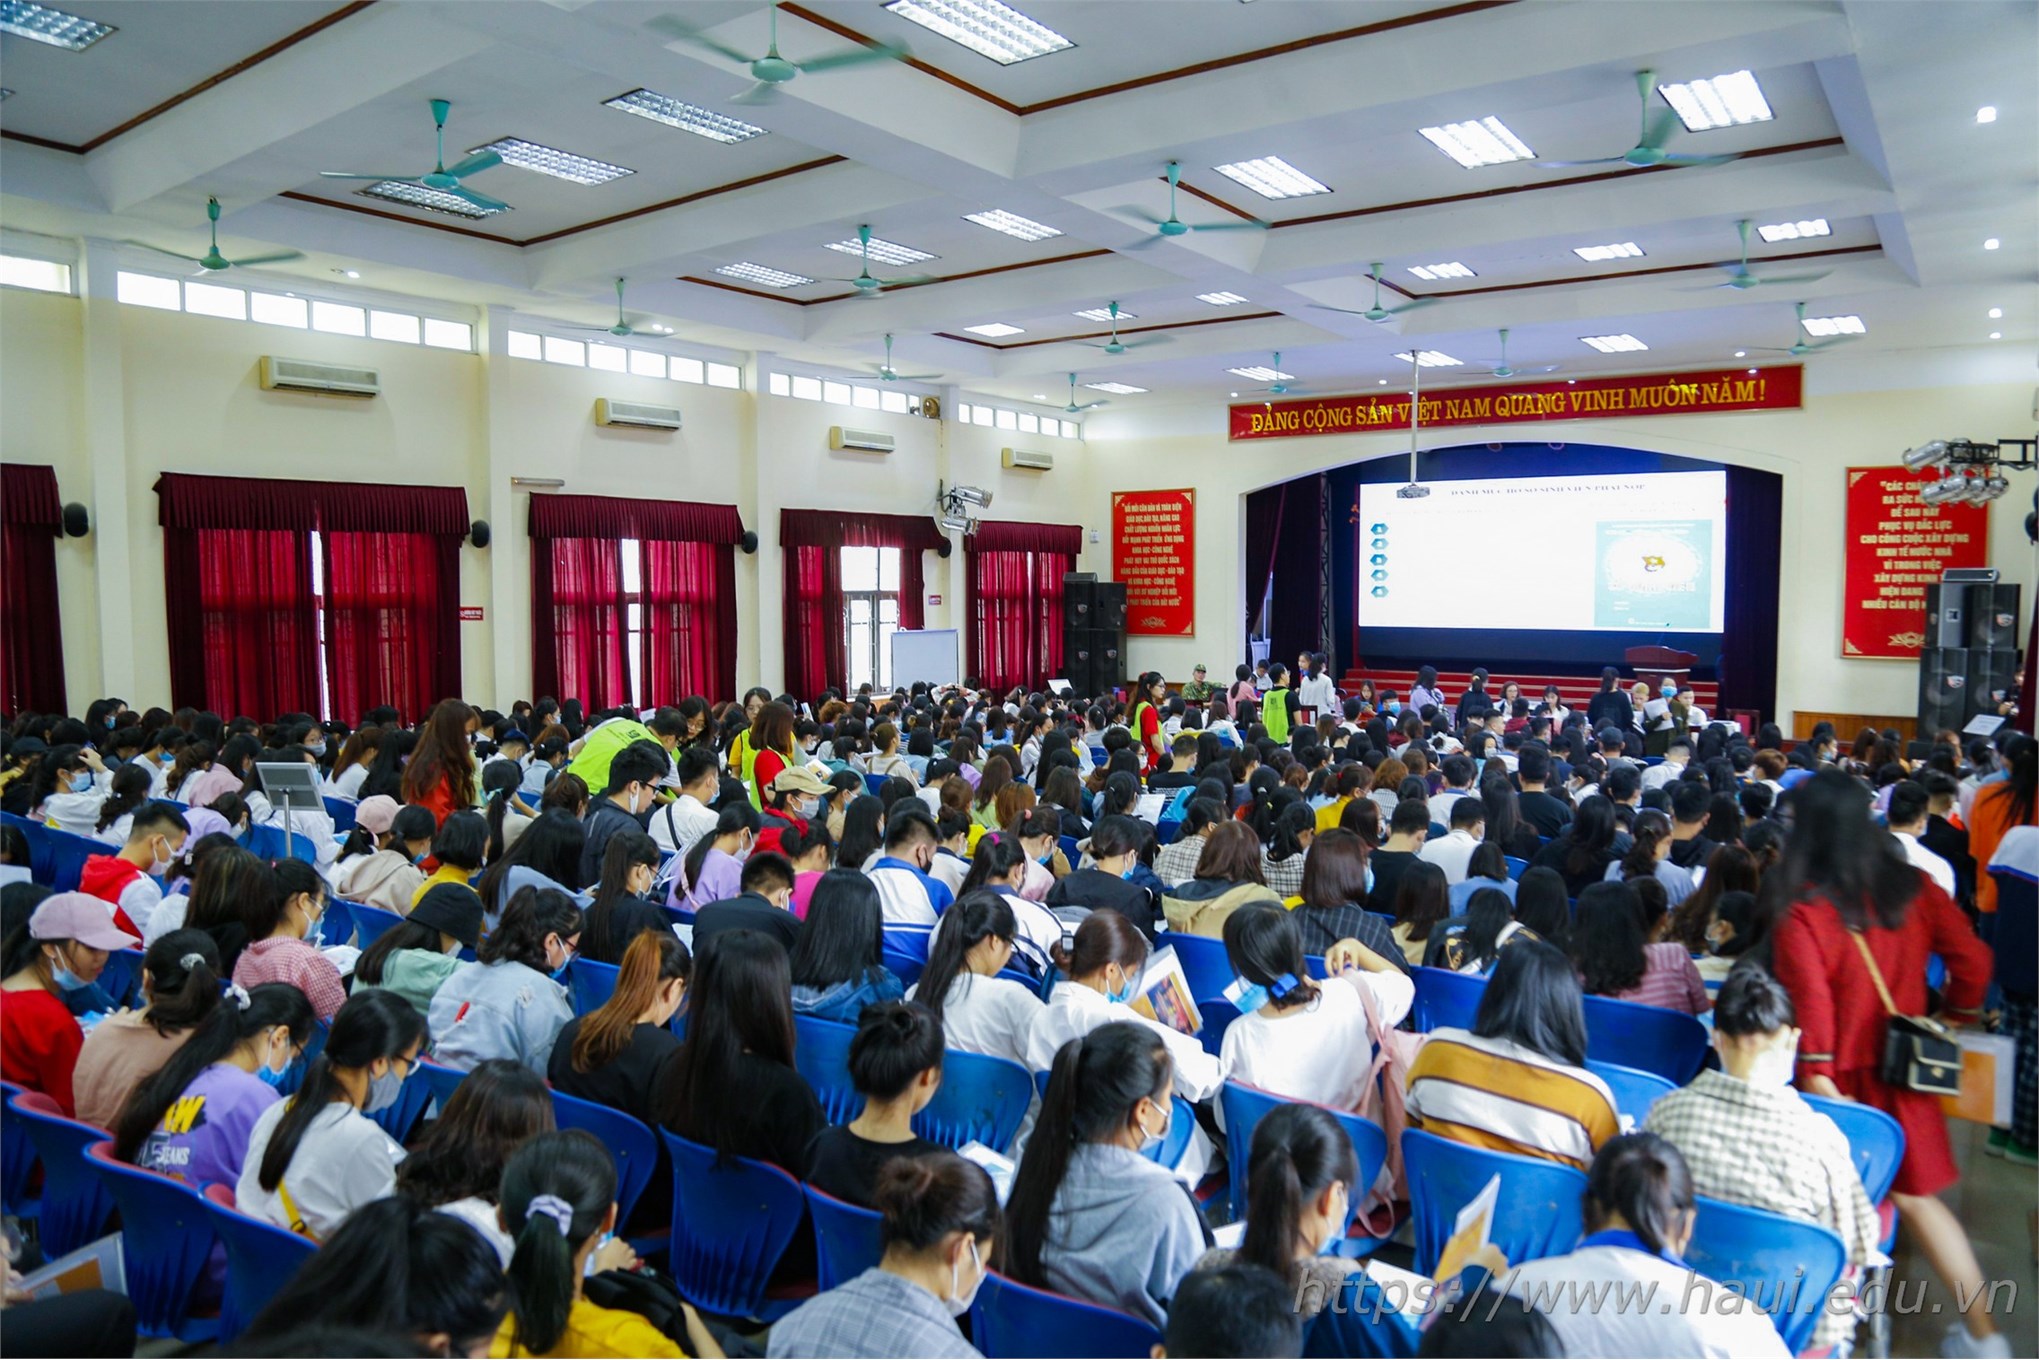 7.000 tân sinh viên ra nhập ngôi nhà chung Đại học Công nghiệp Hà Nội